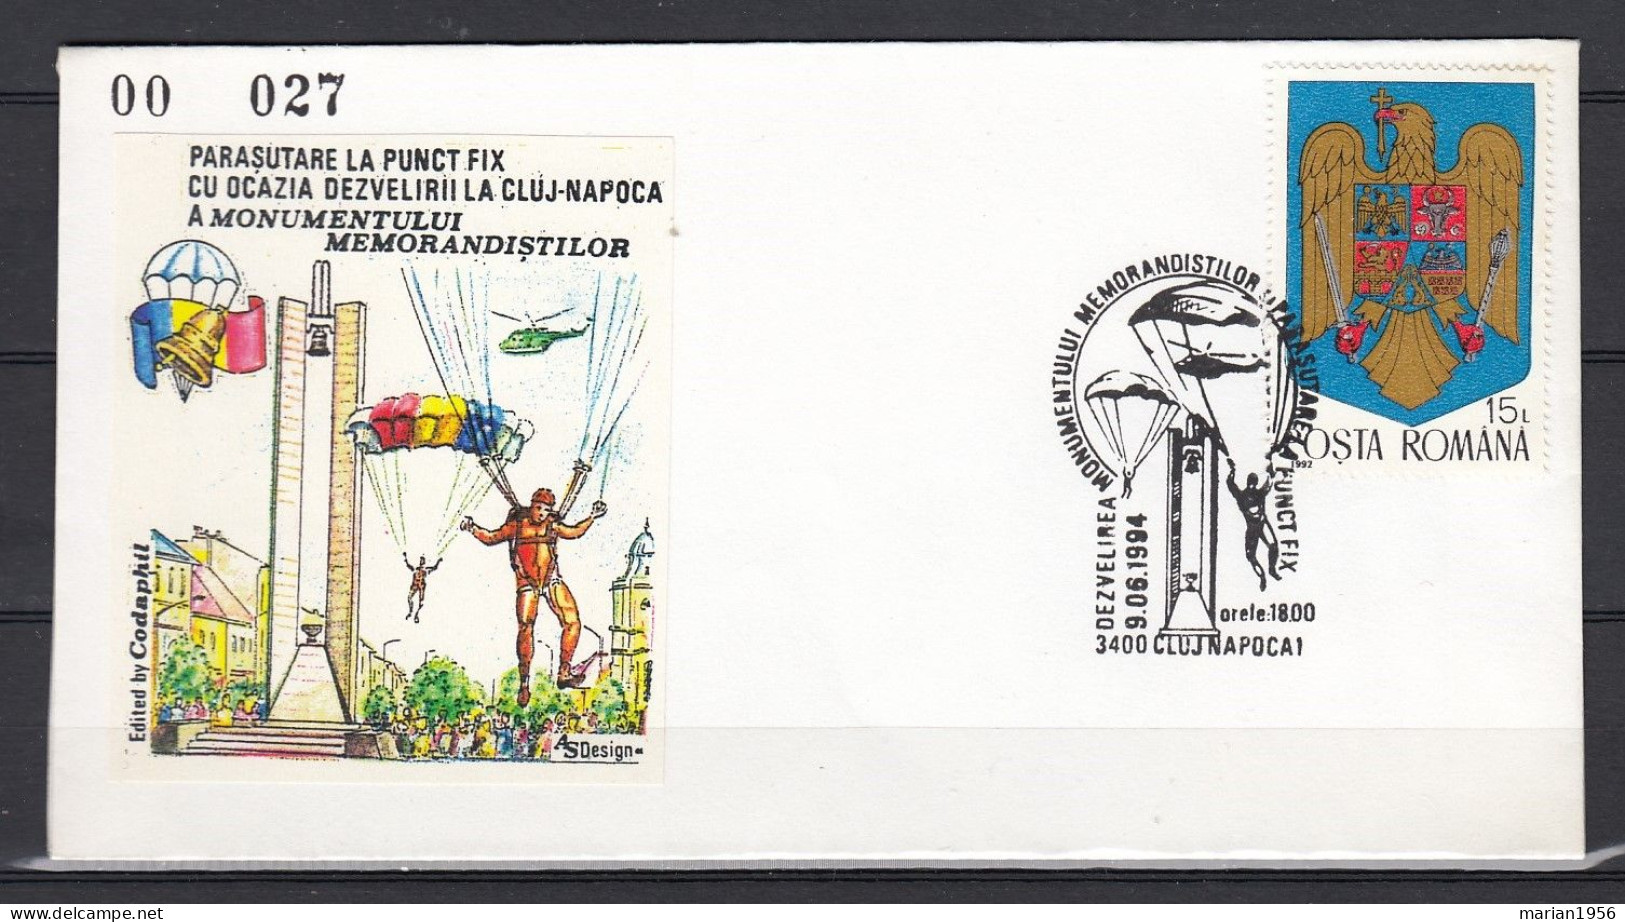 PARACHUTISME - Enveloppe 1994 - Cachet Illustre - Fallschirmspringen